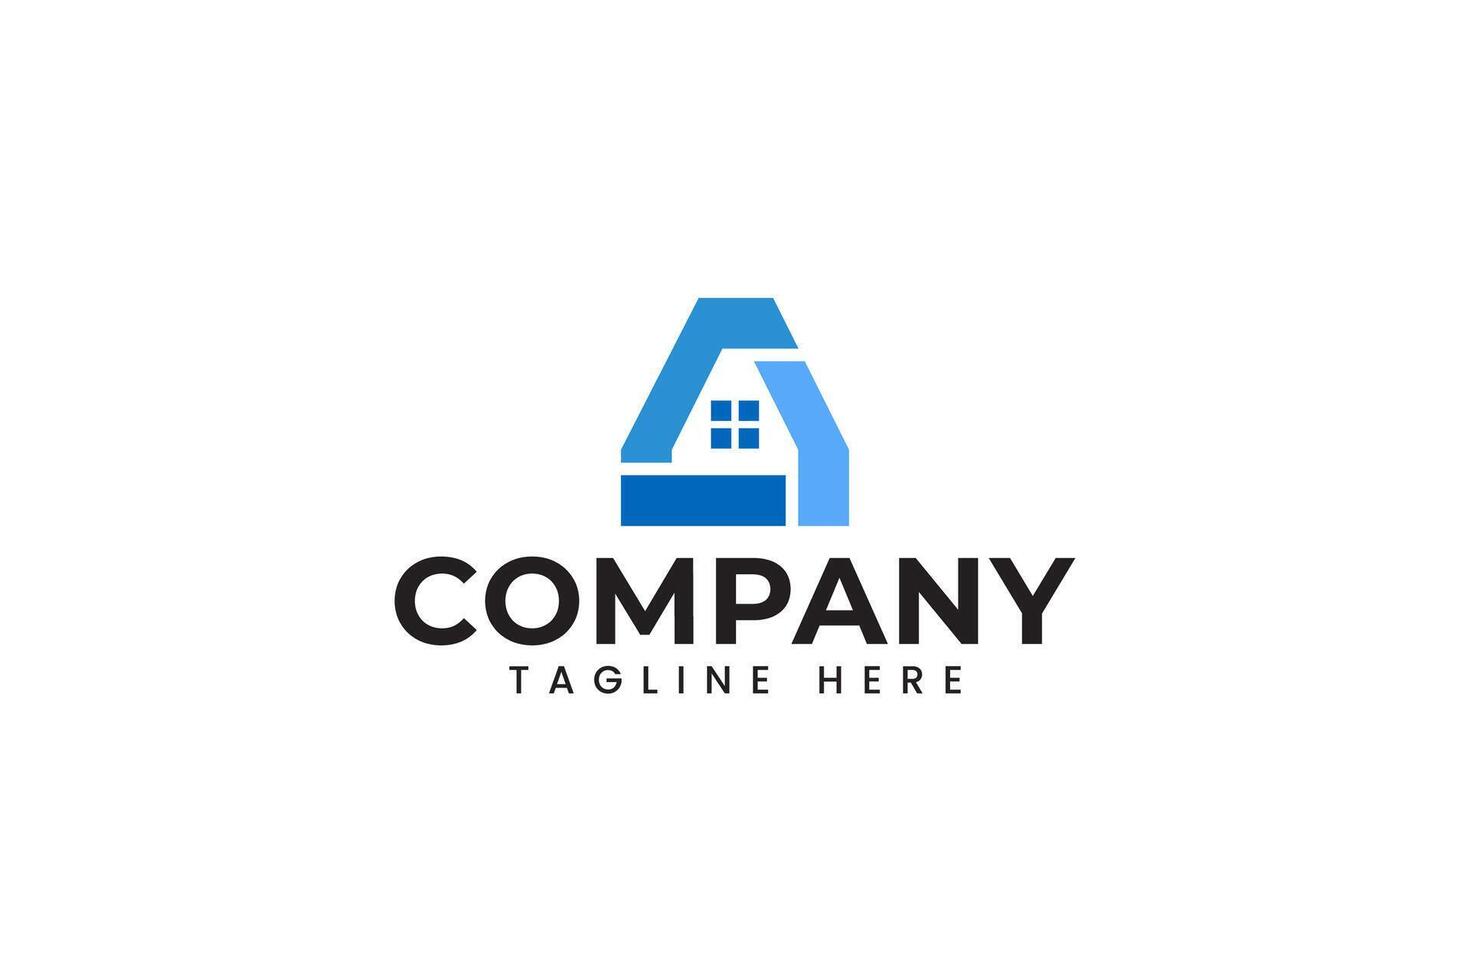 Brief ein echt Nachlass mit Dreieck gestalten Logo Design zum Konstruktion und Hypothek Unternehmen Geschäft vektor